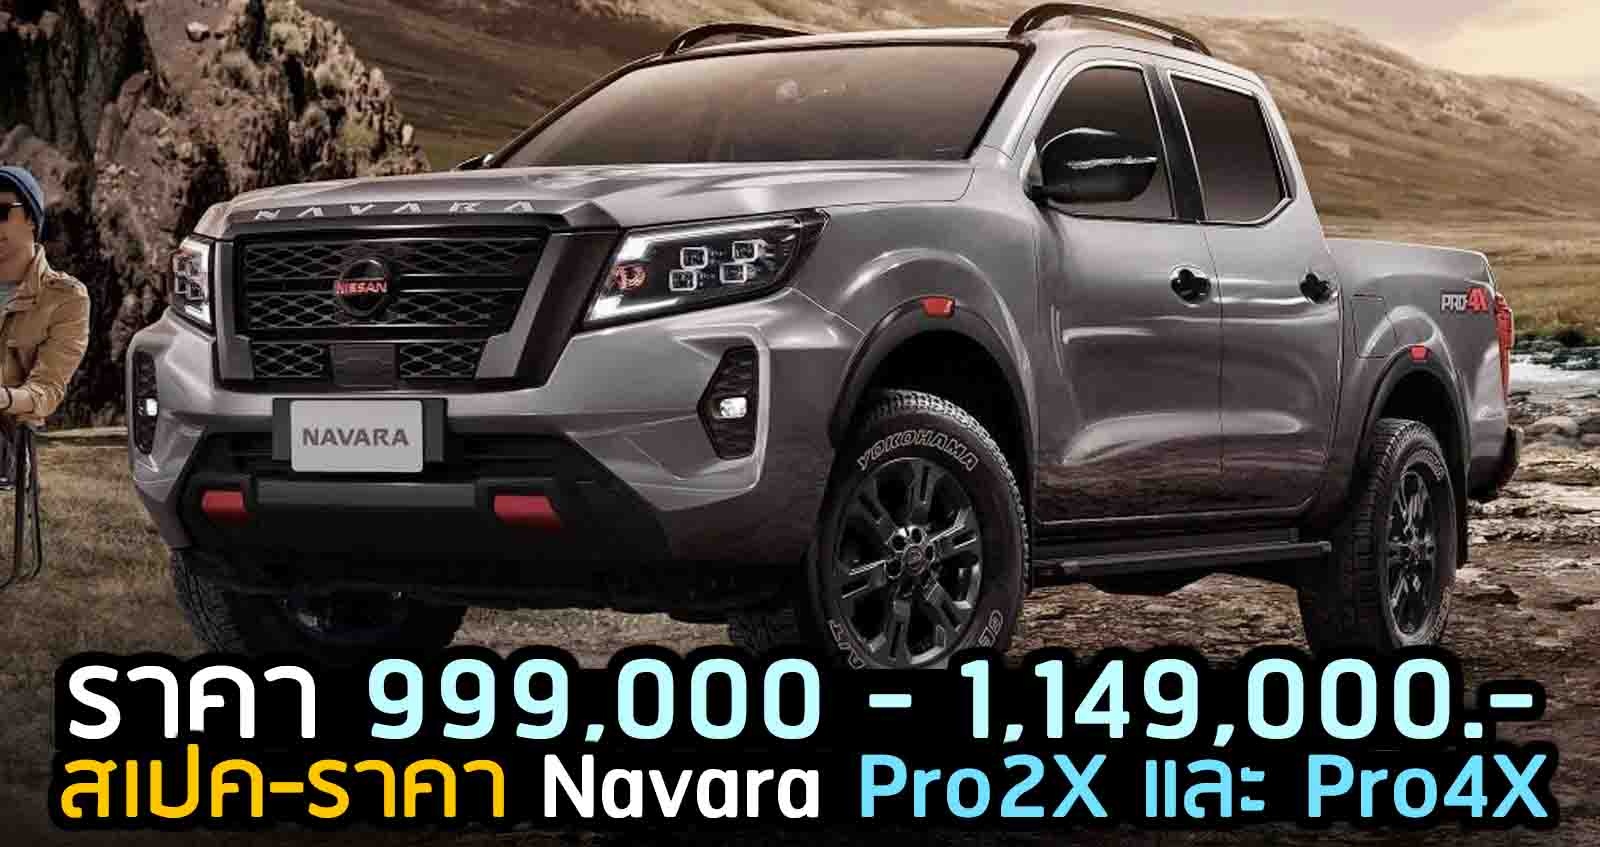 Nissan Navara Pro2X และ Pro4X ตารางราคาผ่อนดาวน์ 2021-2022